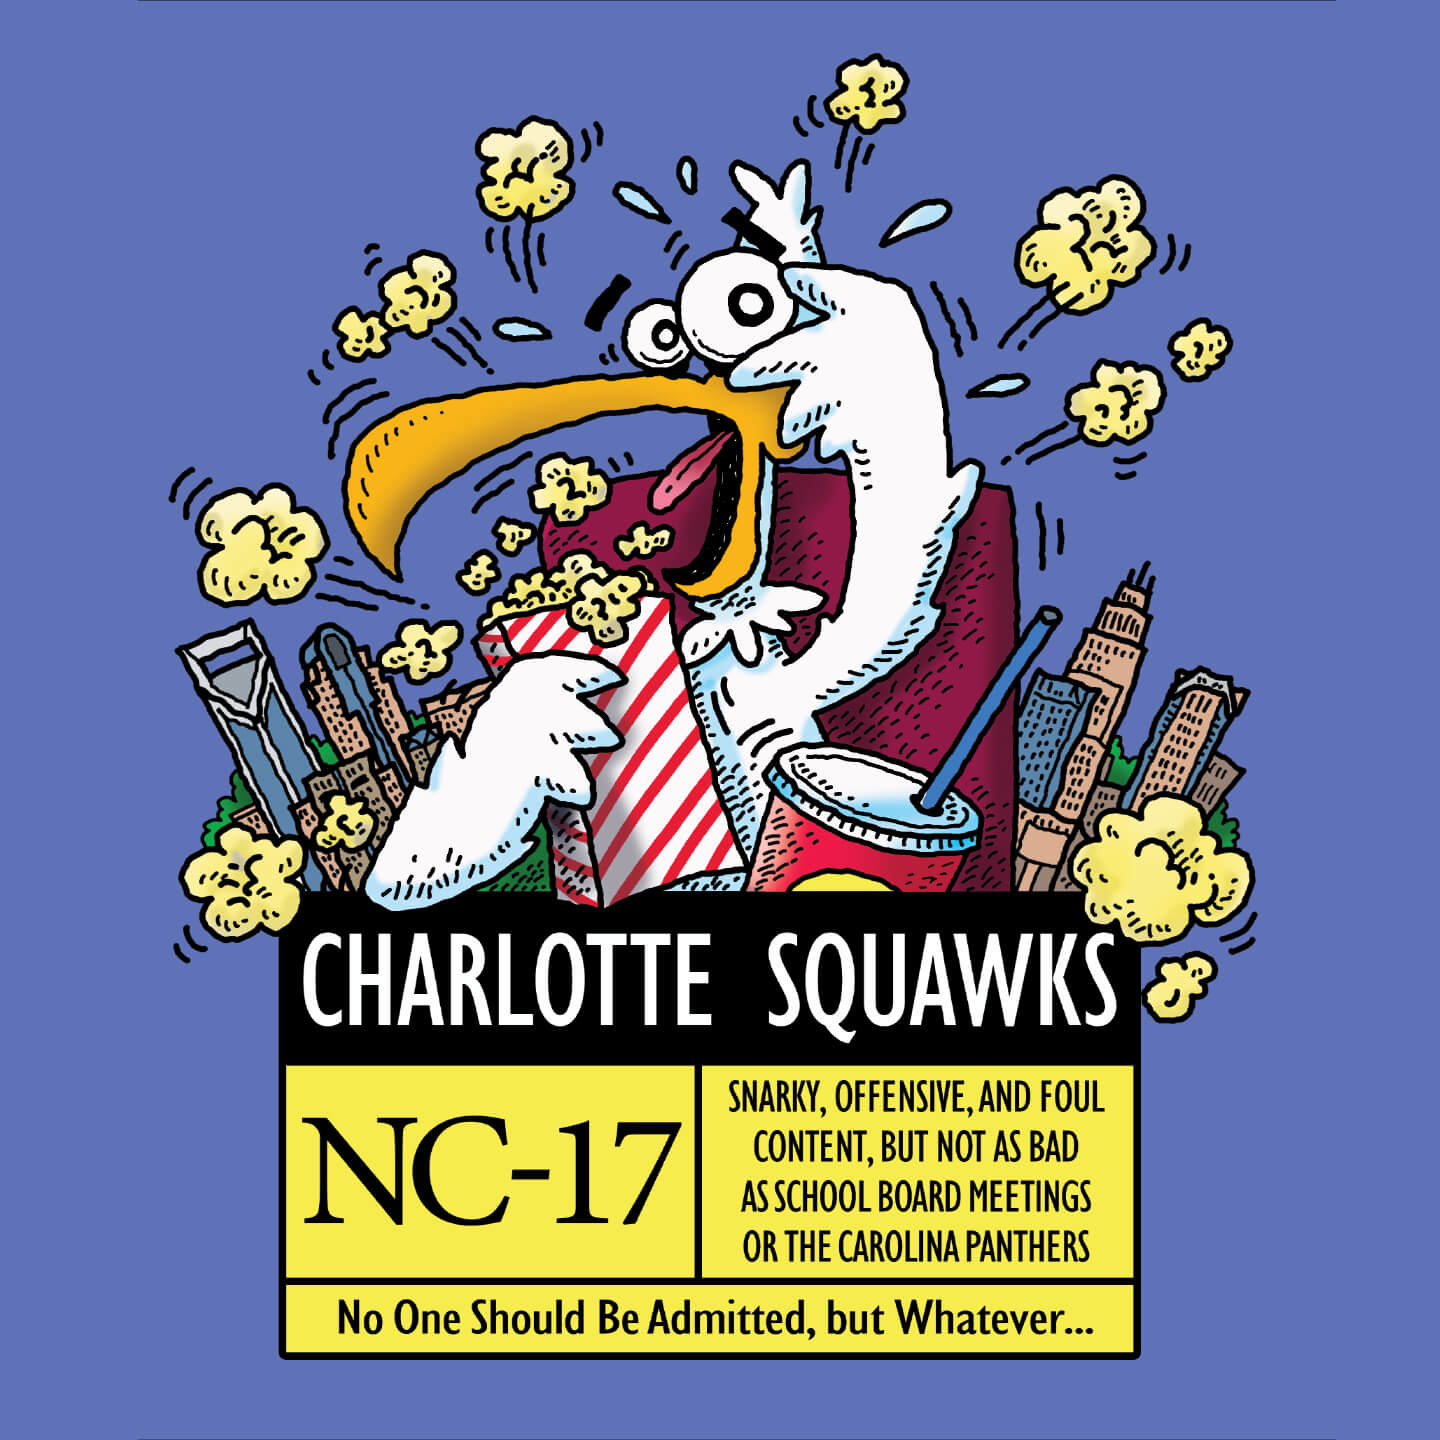 Charlotte Squawks: NC-17